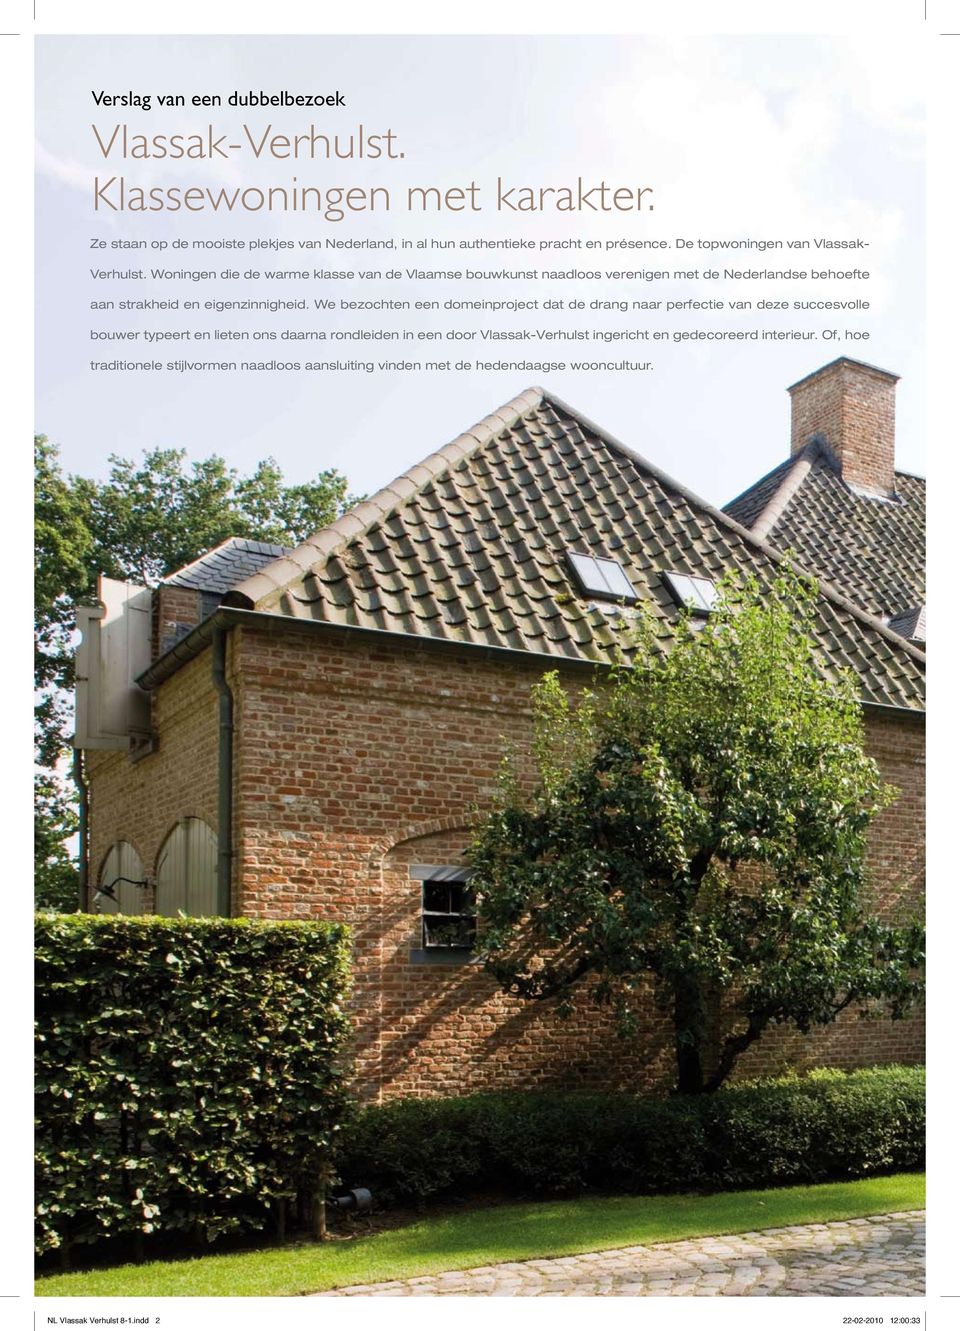 Woningen die de warme klasse van de Vlaamse bouwkunst naadloos verenigen met de Nederlandse behoefte aan strakheid en eigenzinnigheid.